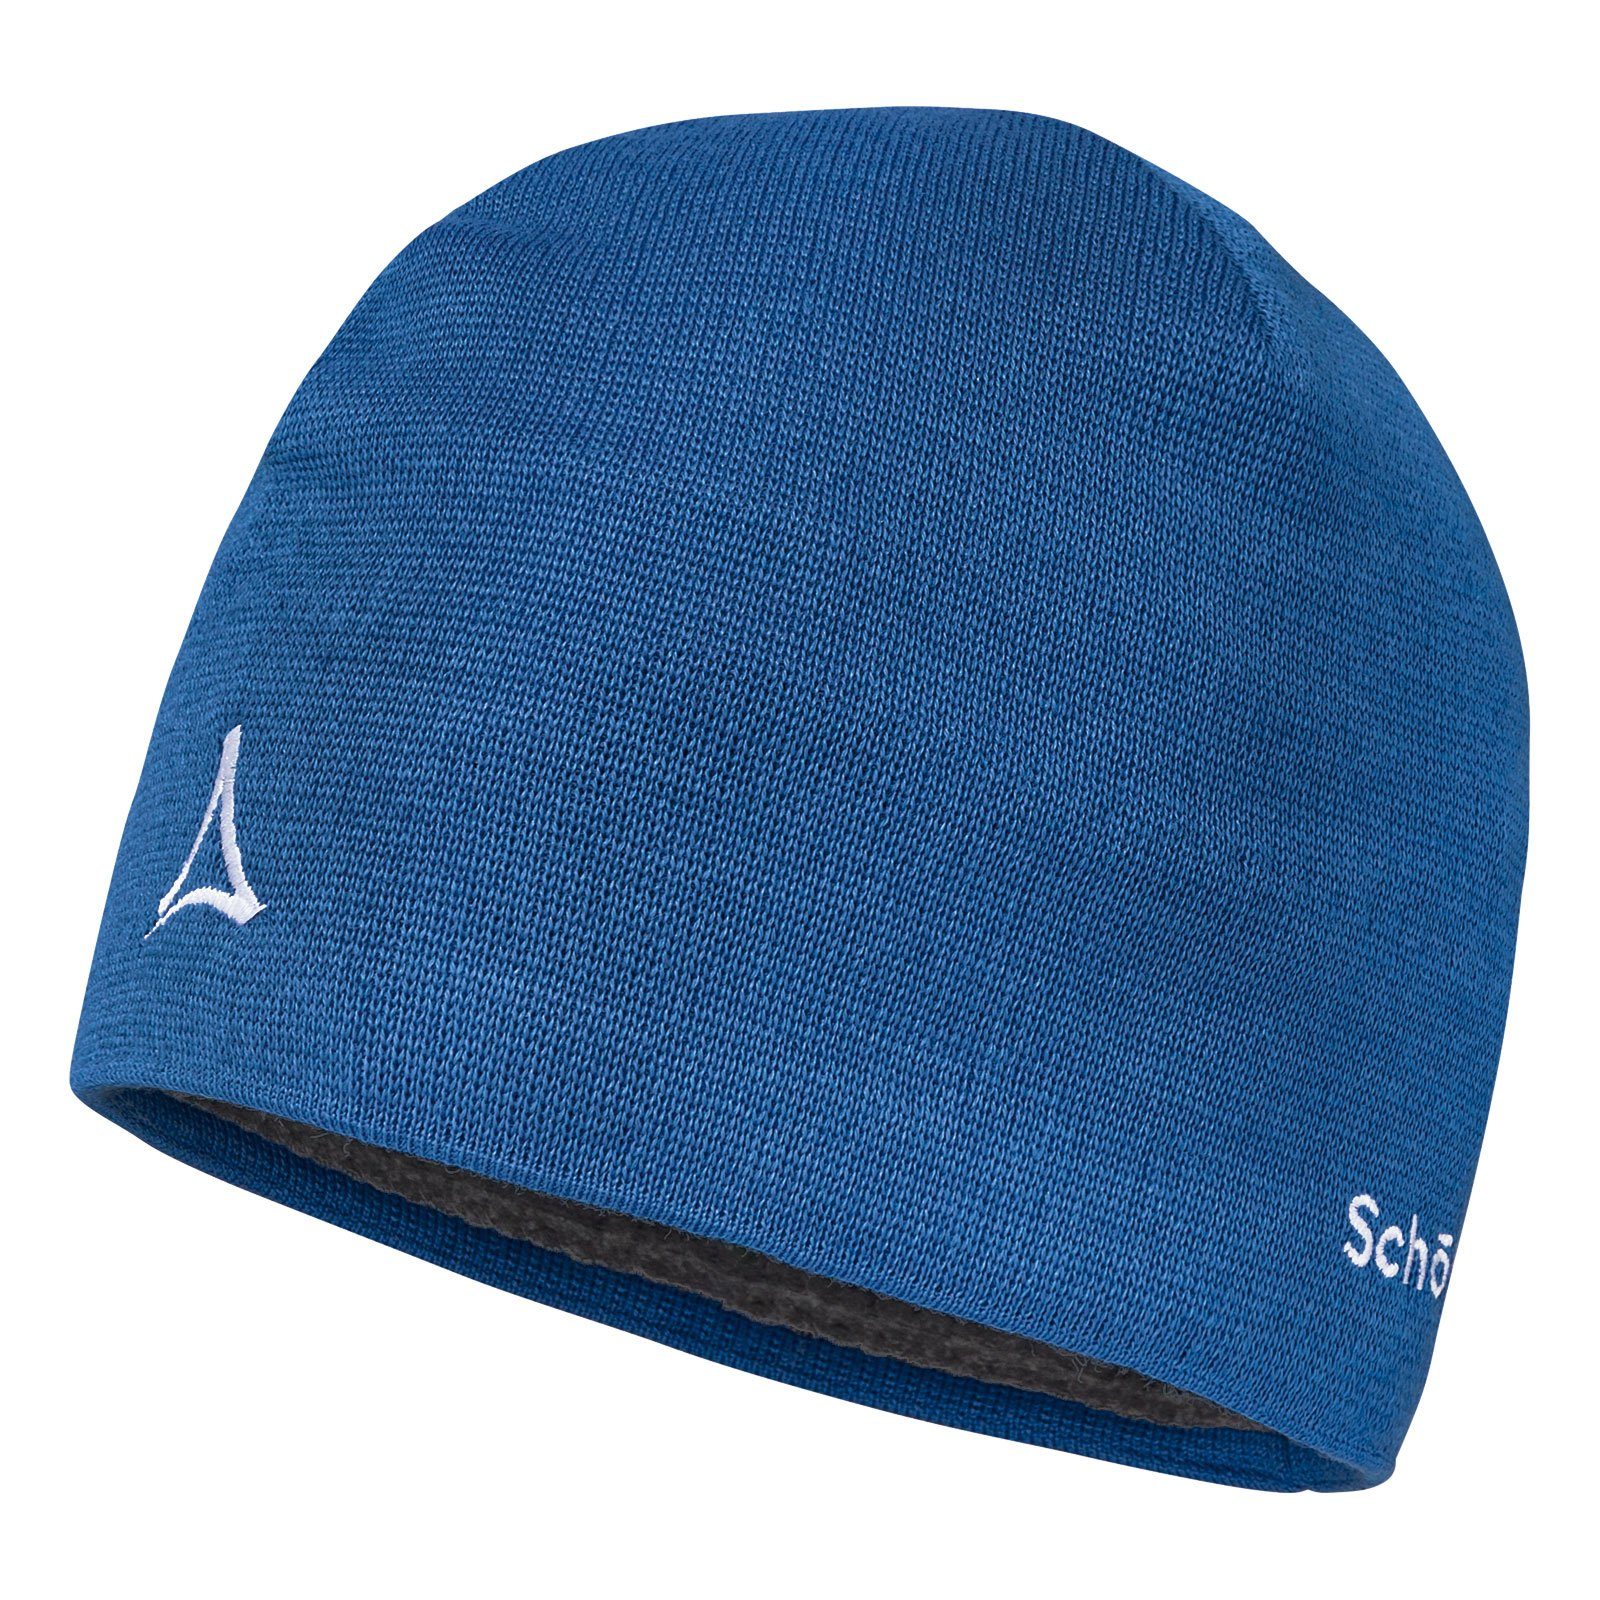 supergünstiger Preis Schöffel Beanie Knitted Blau Fornet Hat mit Markenlogo